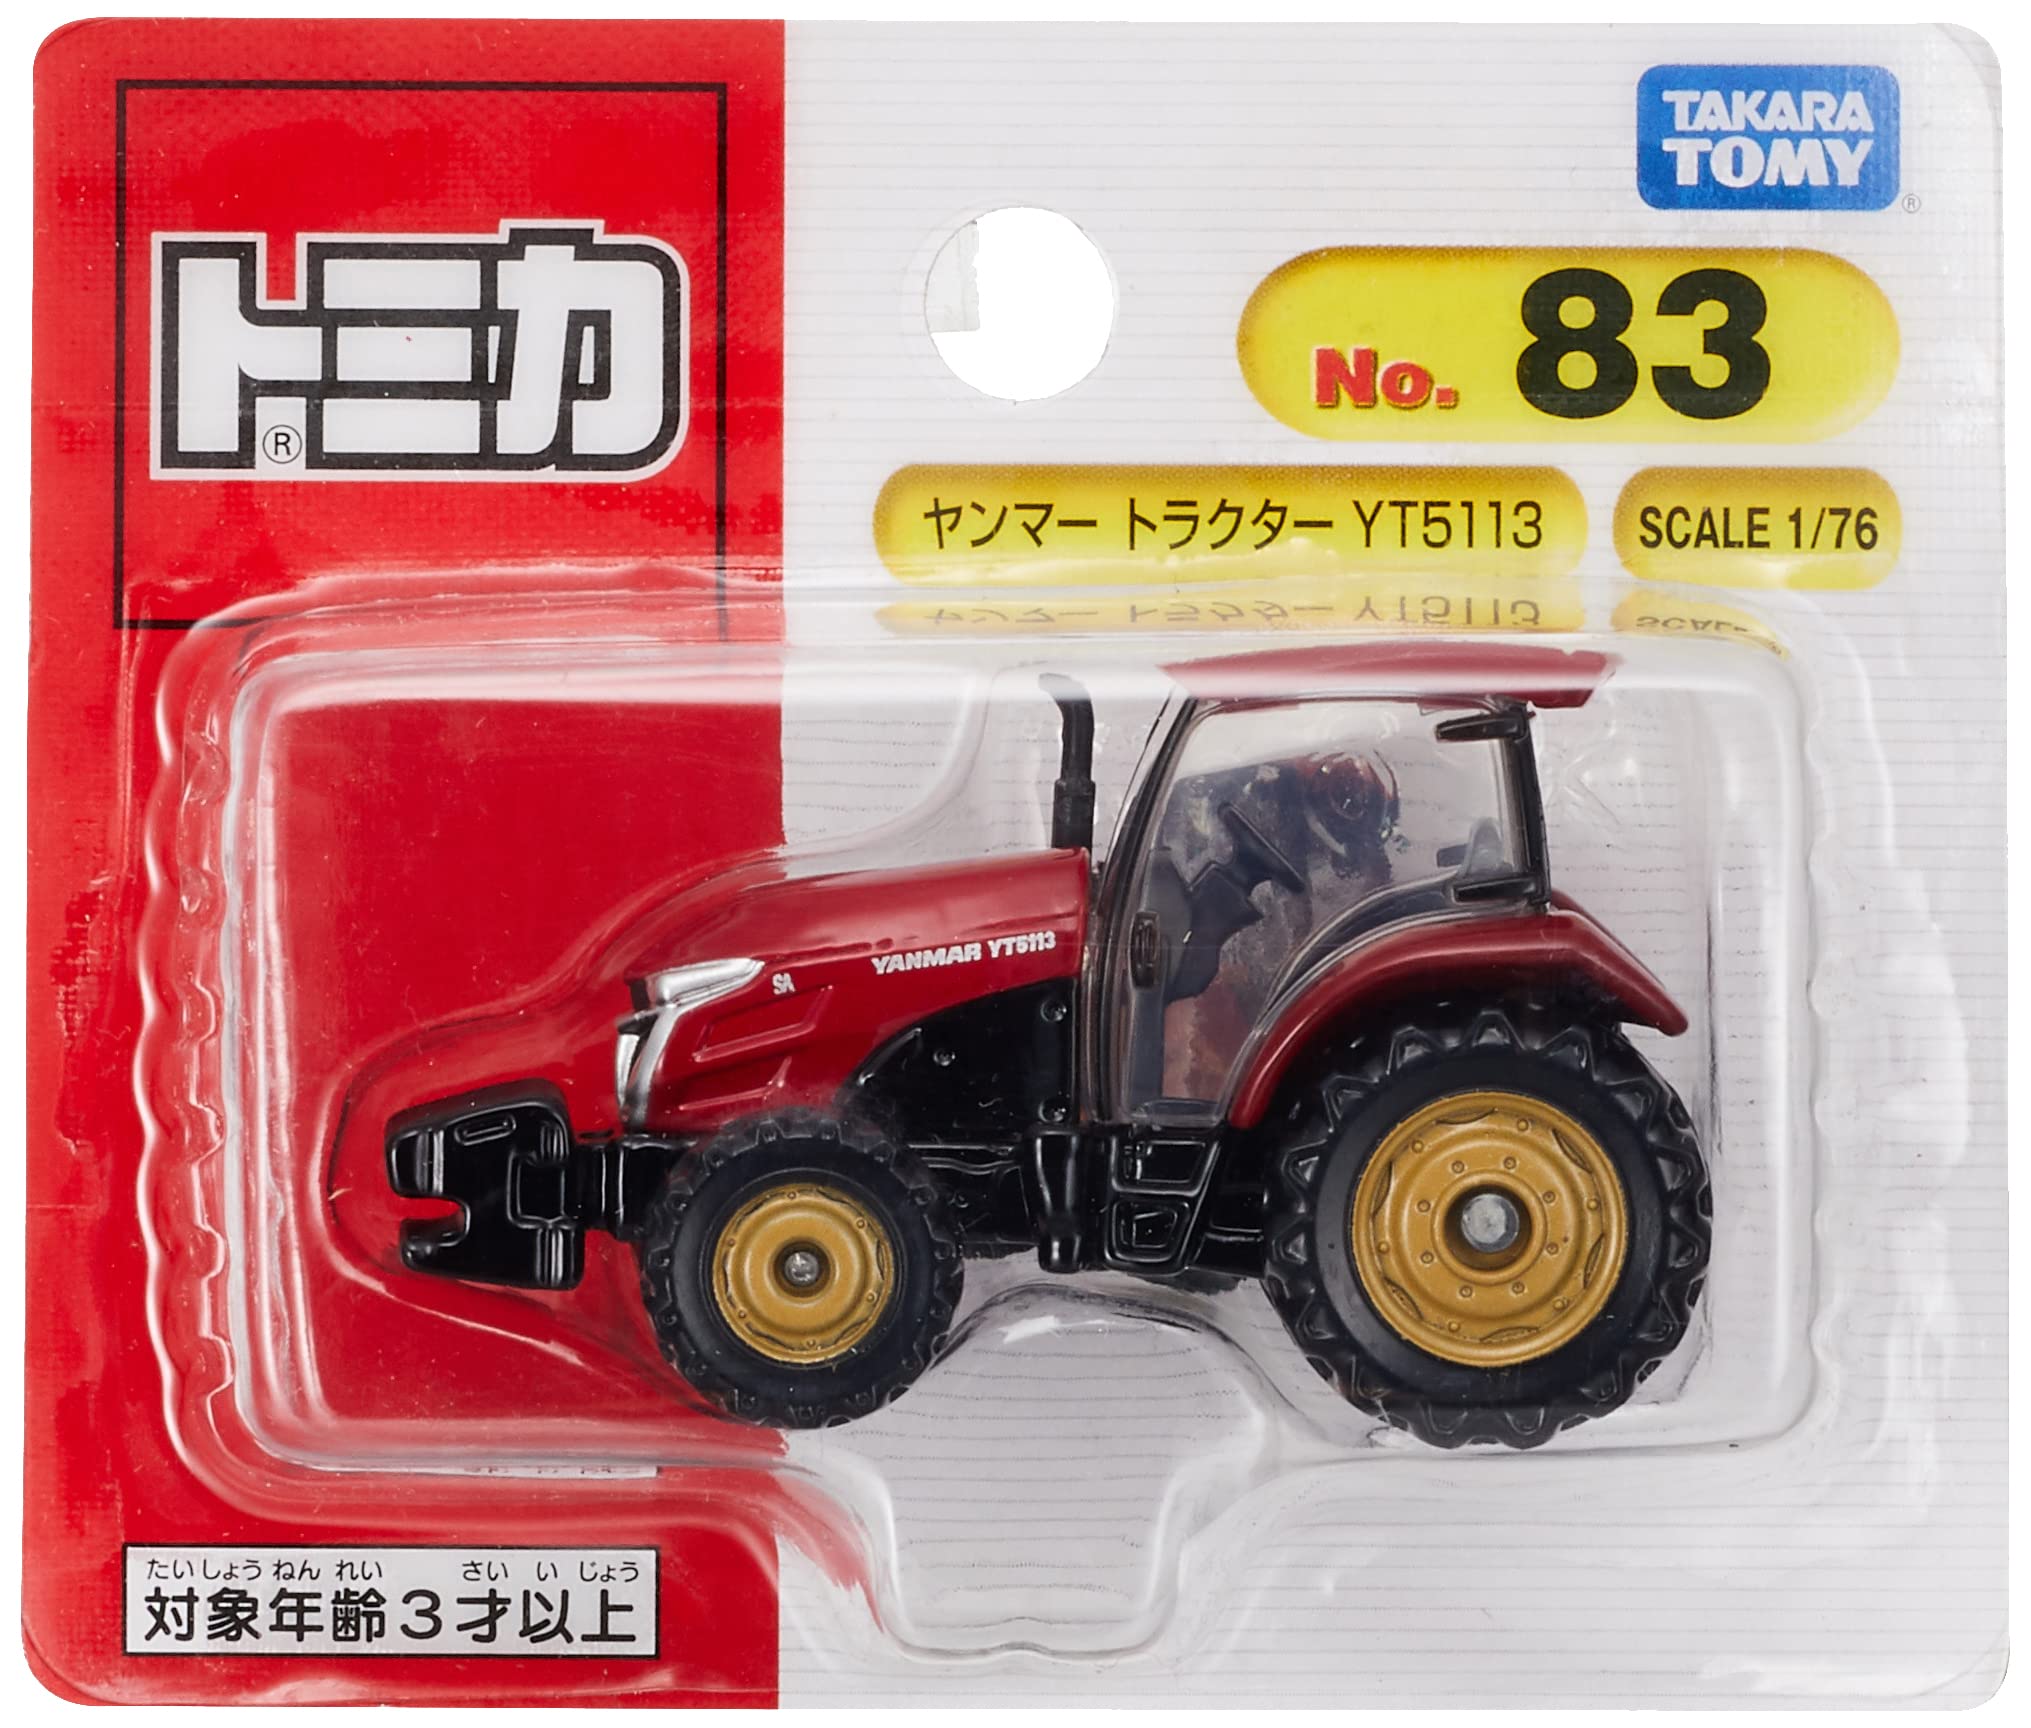 タカラトミー『 トミカ No.83 ヤンマー トラクター YT5113(ブリスターパッケージ) 』 ミニカー 車 おもちゃ 3歳以上 ブリスターパッケージ 玩具安全基準合格 STマーク認証 TOMICA TAKARA TOMY